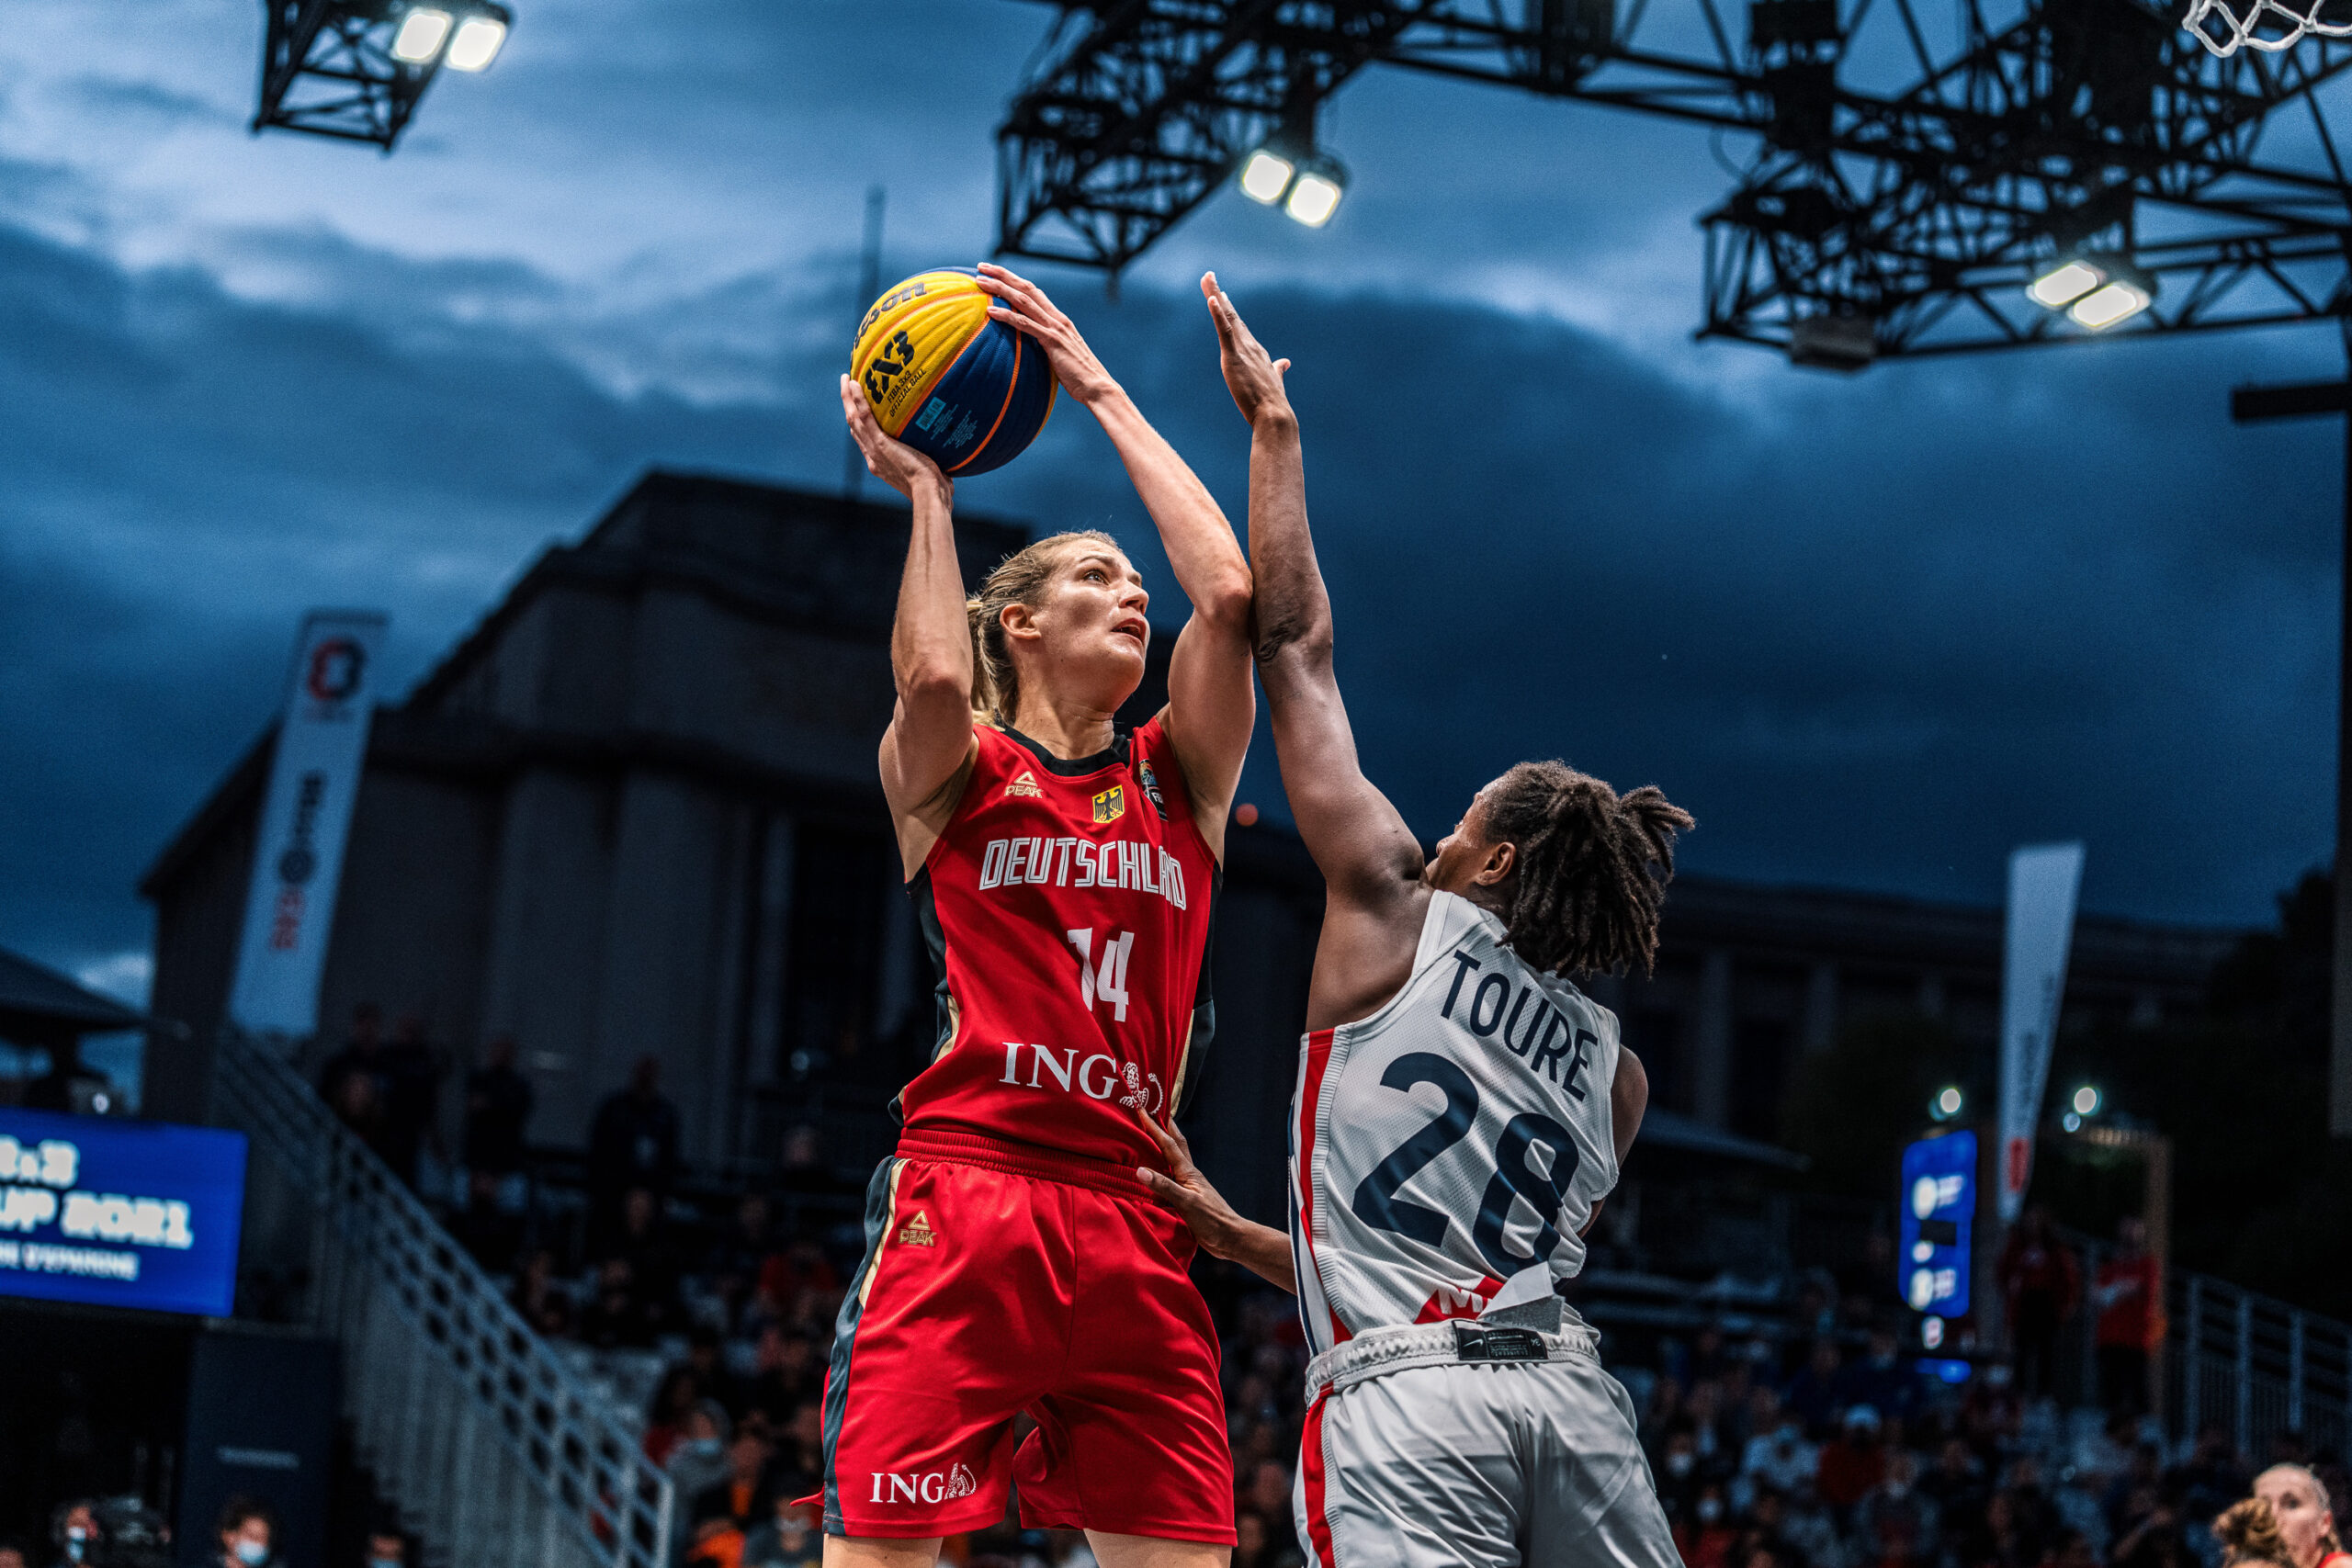 3x3-Nationalspielerin Sonja Greinacher beim FIBA 3x3 Europe Cup 2021 in Paris. während der Partie gegen die Gastgeberinnen aus Frankreich.